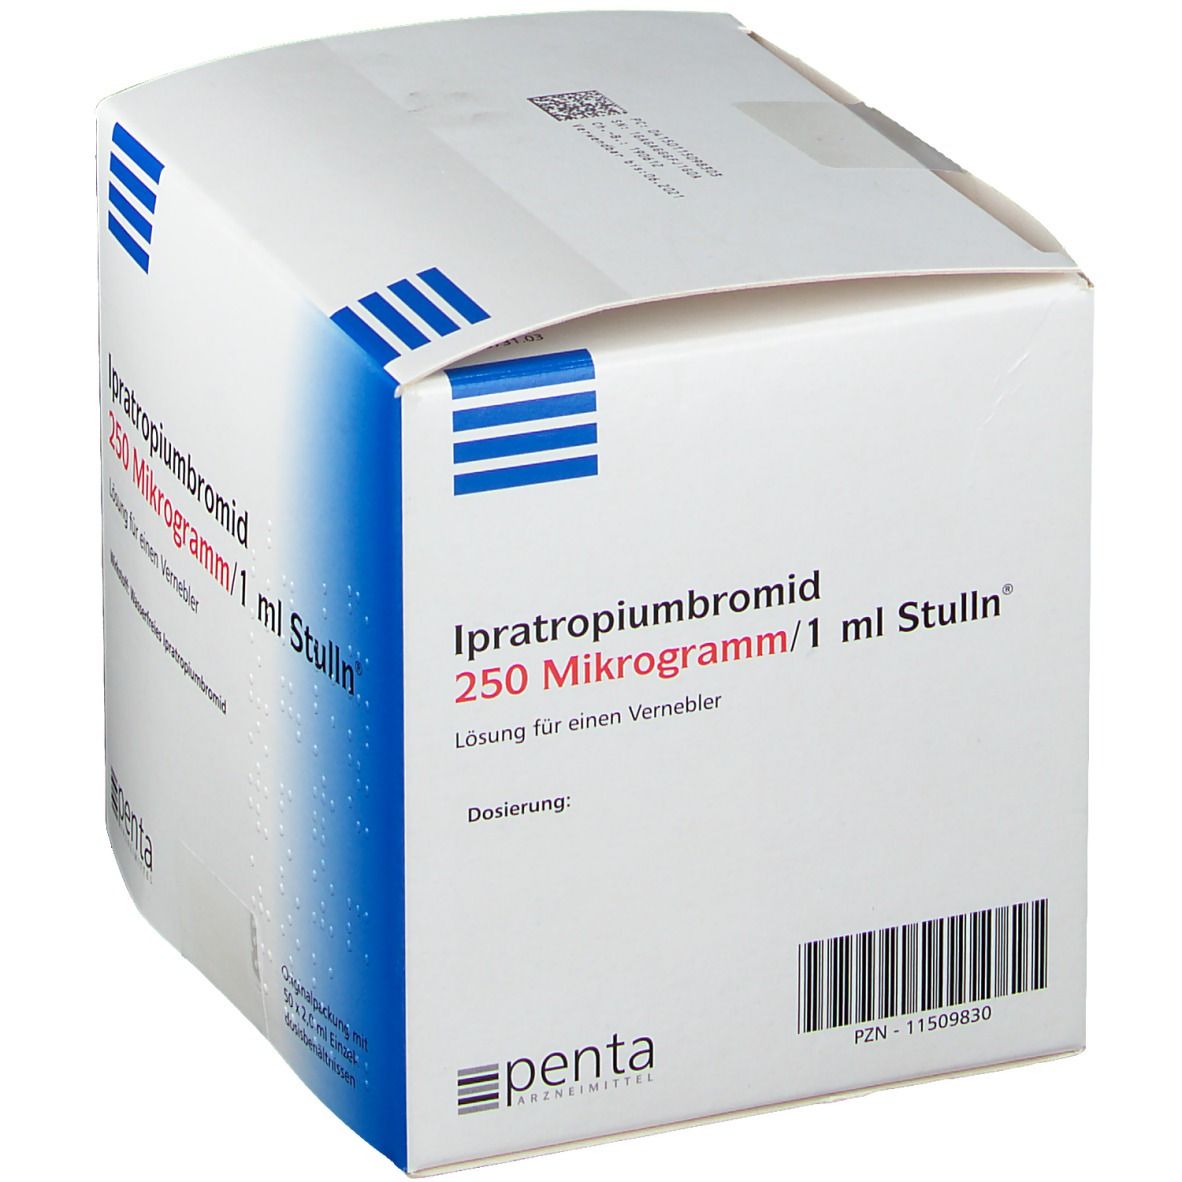 Ipratropiumbromid 250 µg/1 ml Stulln®